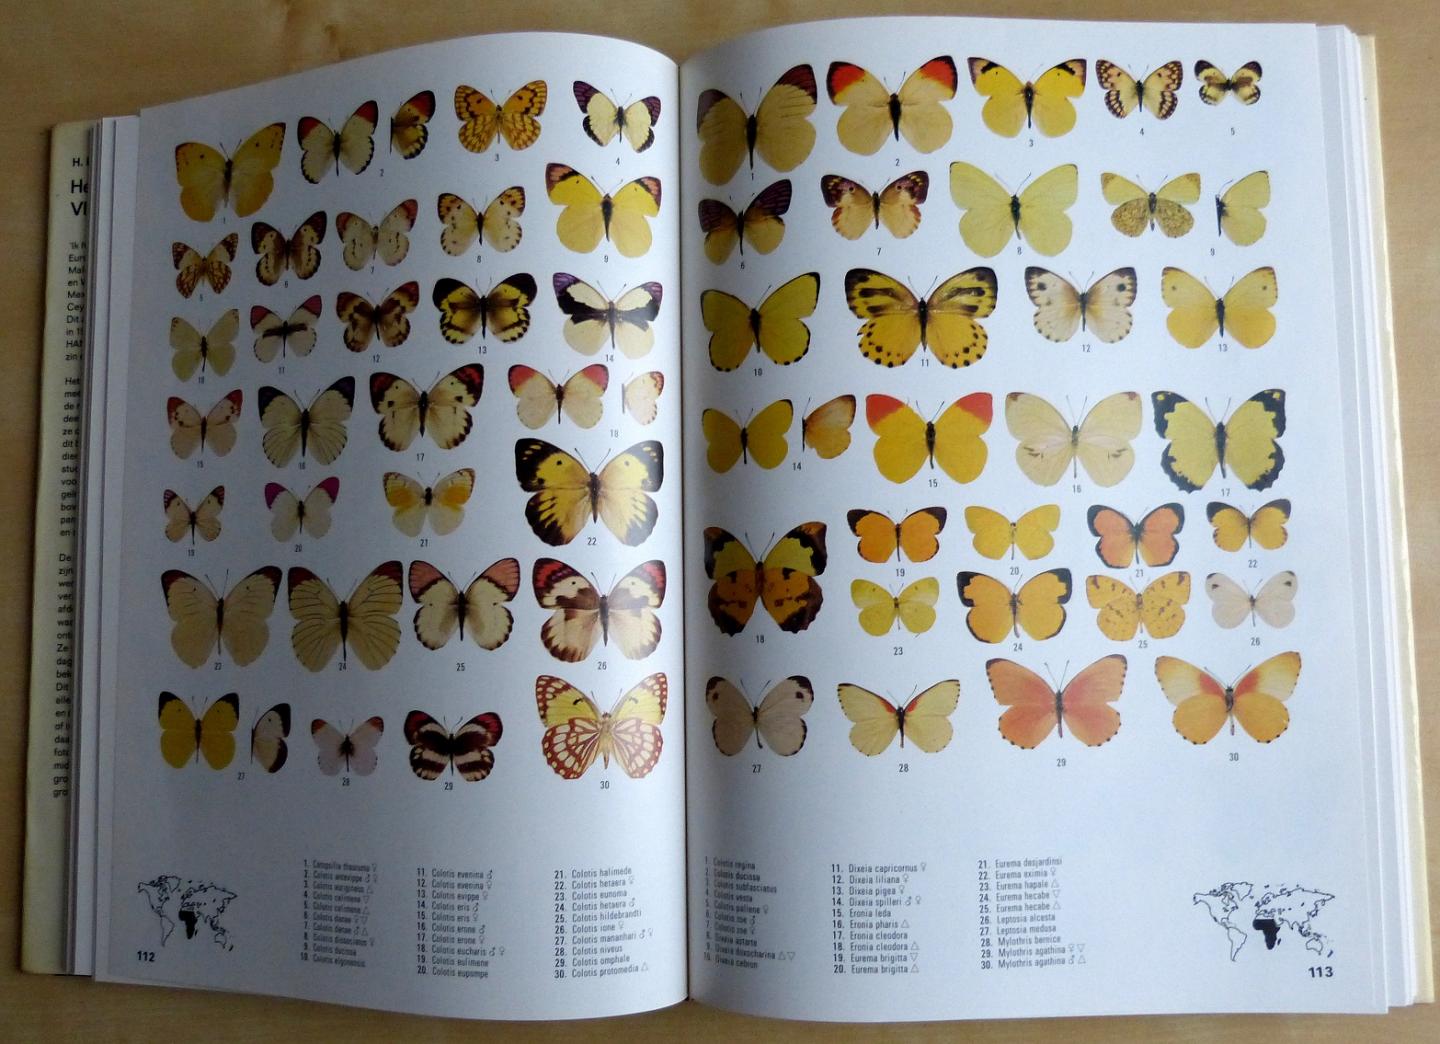 Lewis, H.L. - Het grote Vlinderhandboek